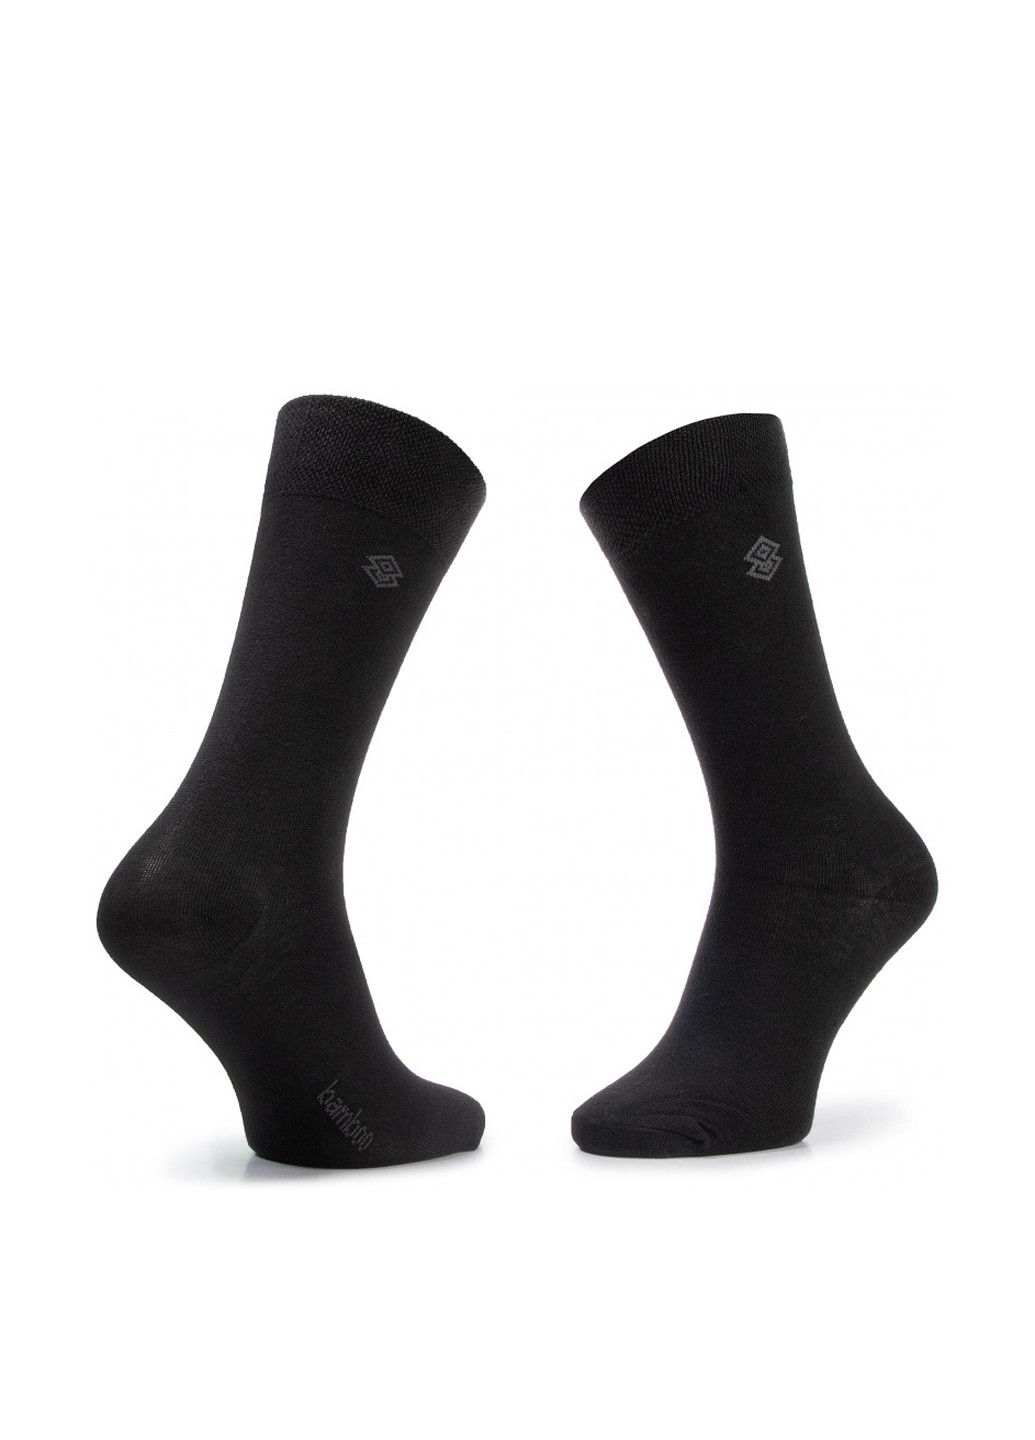 Шкарпетки чоловічі SKARPETA  BAMBOO 42-44 Lasocki SKARPETA BAMBOO 42-44 однотонные чёрные повседневные